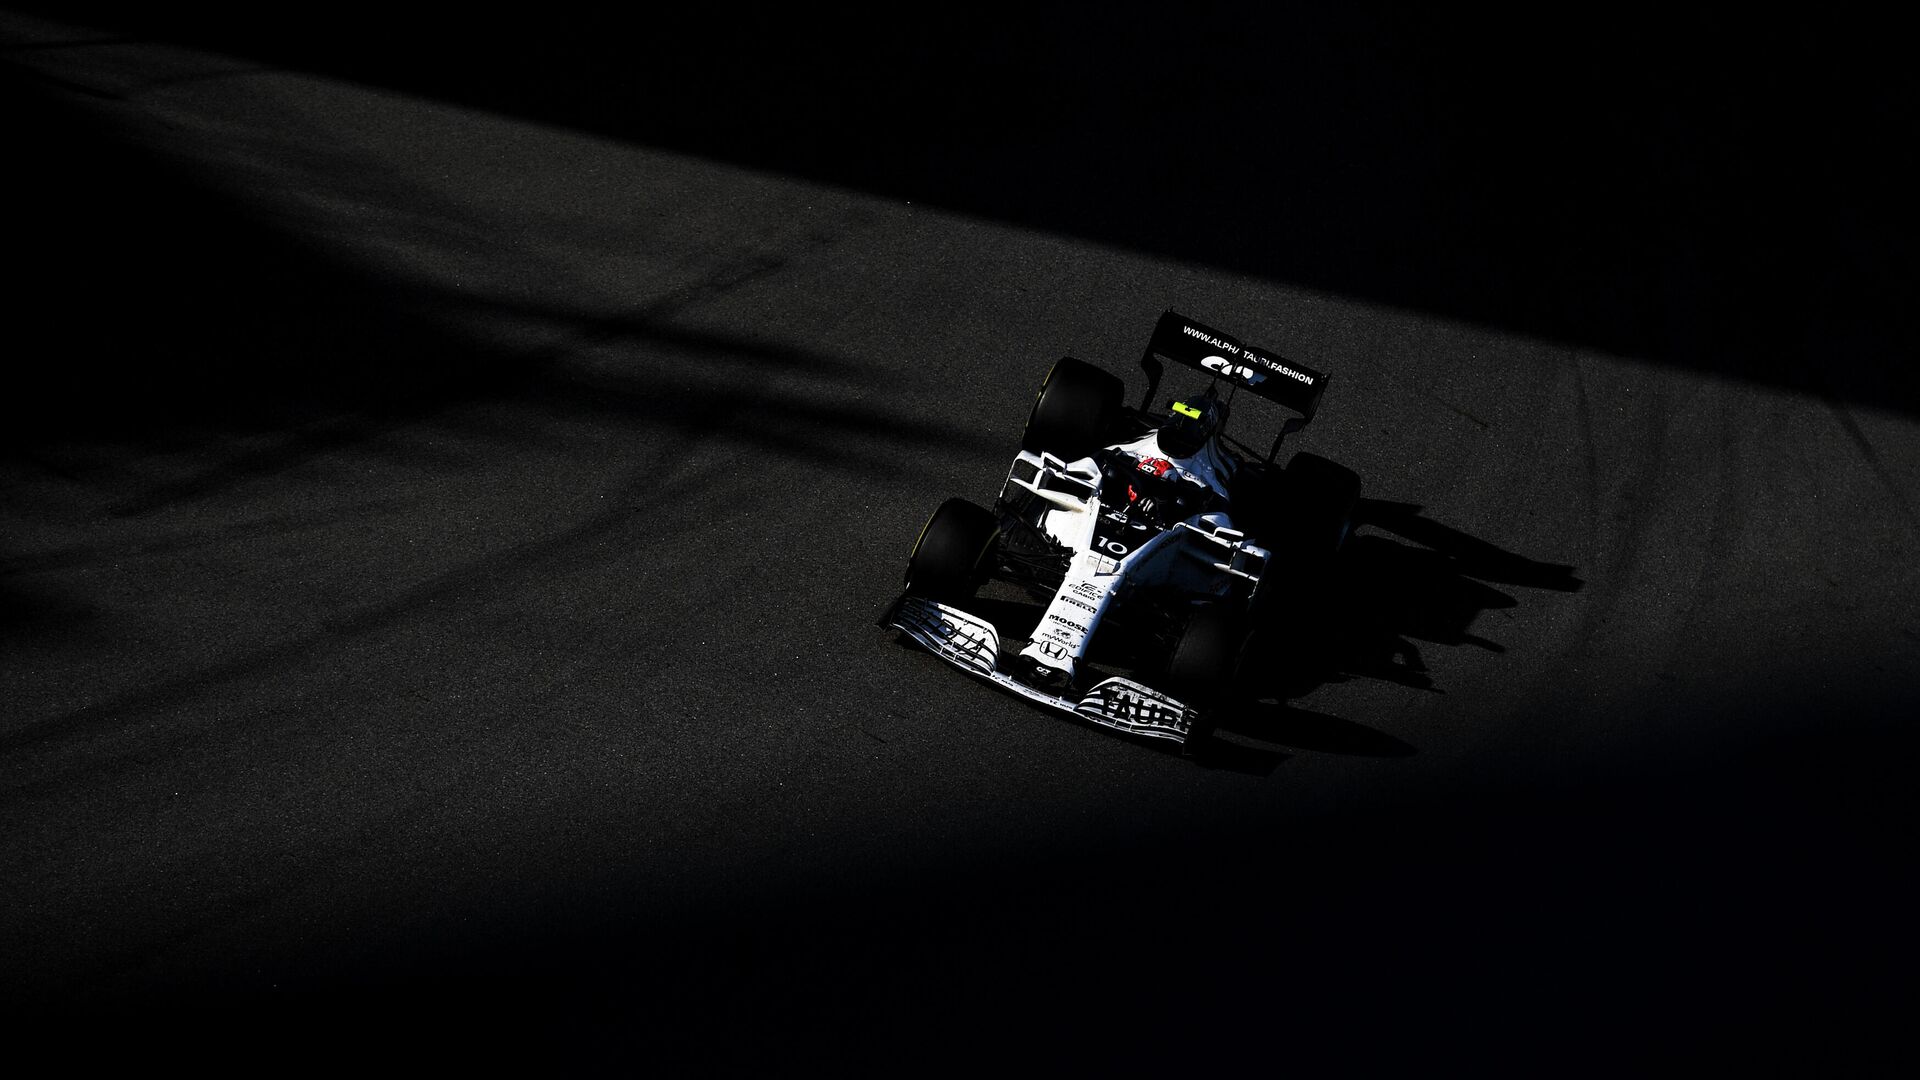 Француз Гасли показал лучшее время в первый день тестов "Формулы-1" в Бахрейне